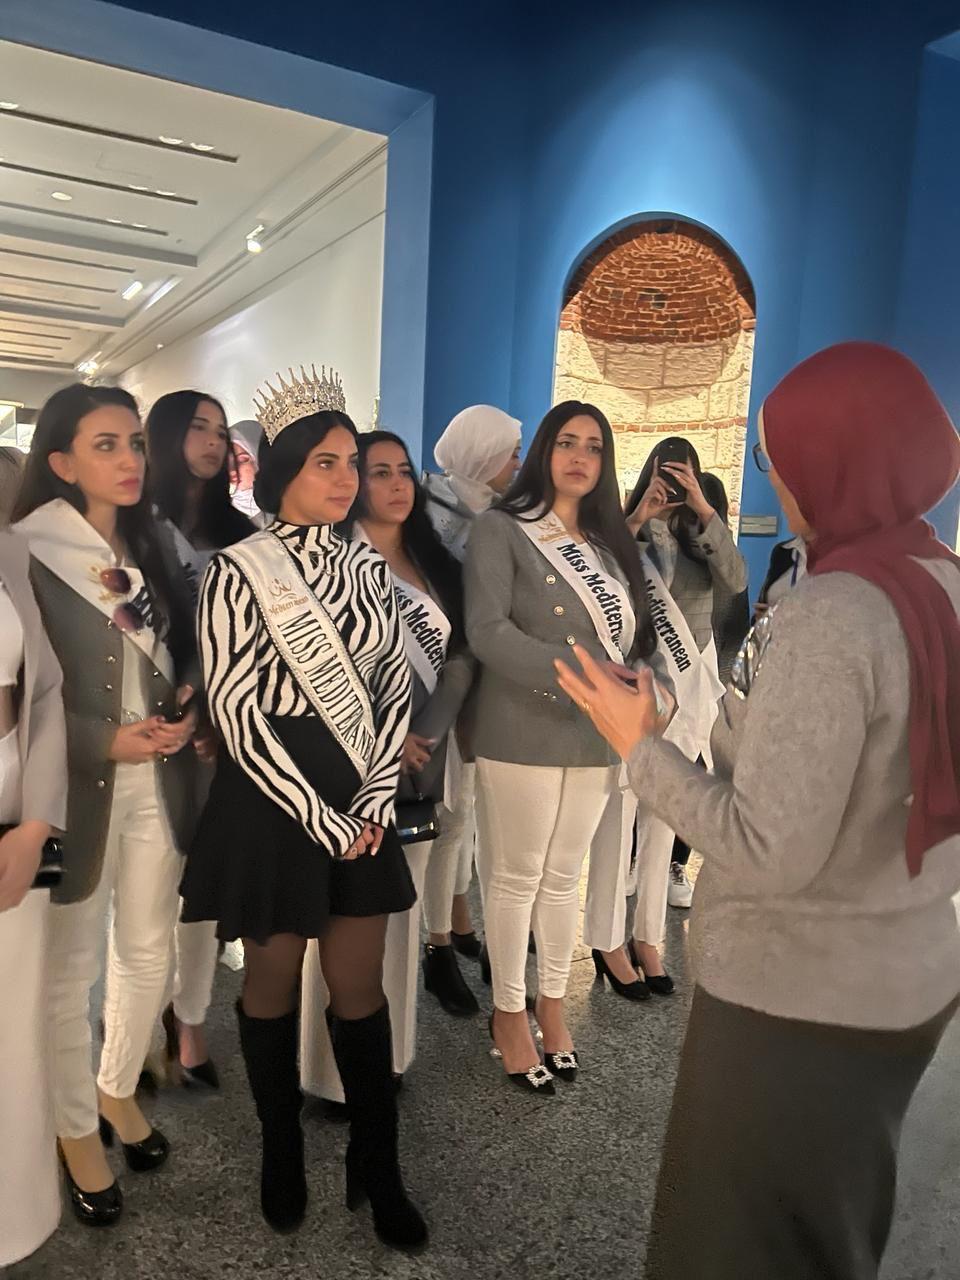 ملكات جمال البحر المتوسط في زيارة تعريفية للمتحف اليوناني الروماني بالإسكندرية